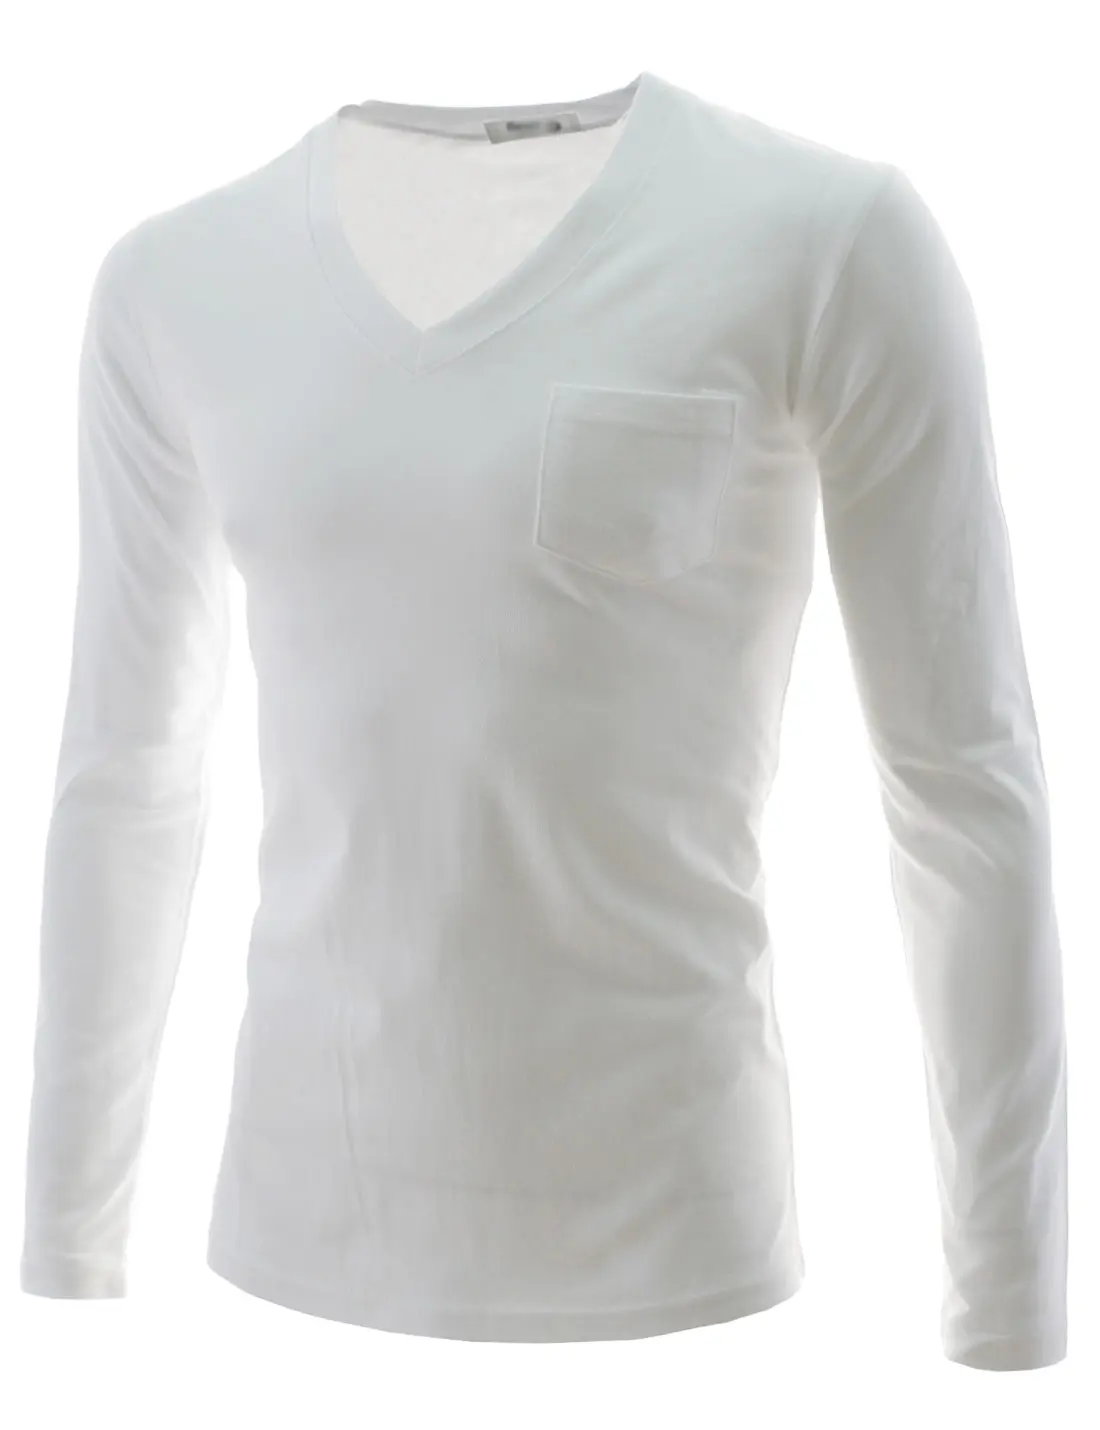 도매 고품질 남성용 일반 티셔츠 흰색 티셔츠 맞춤 승화 남성 티셔츠 공백 여름용 대형 티셔츠